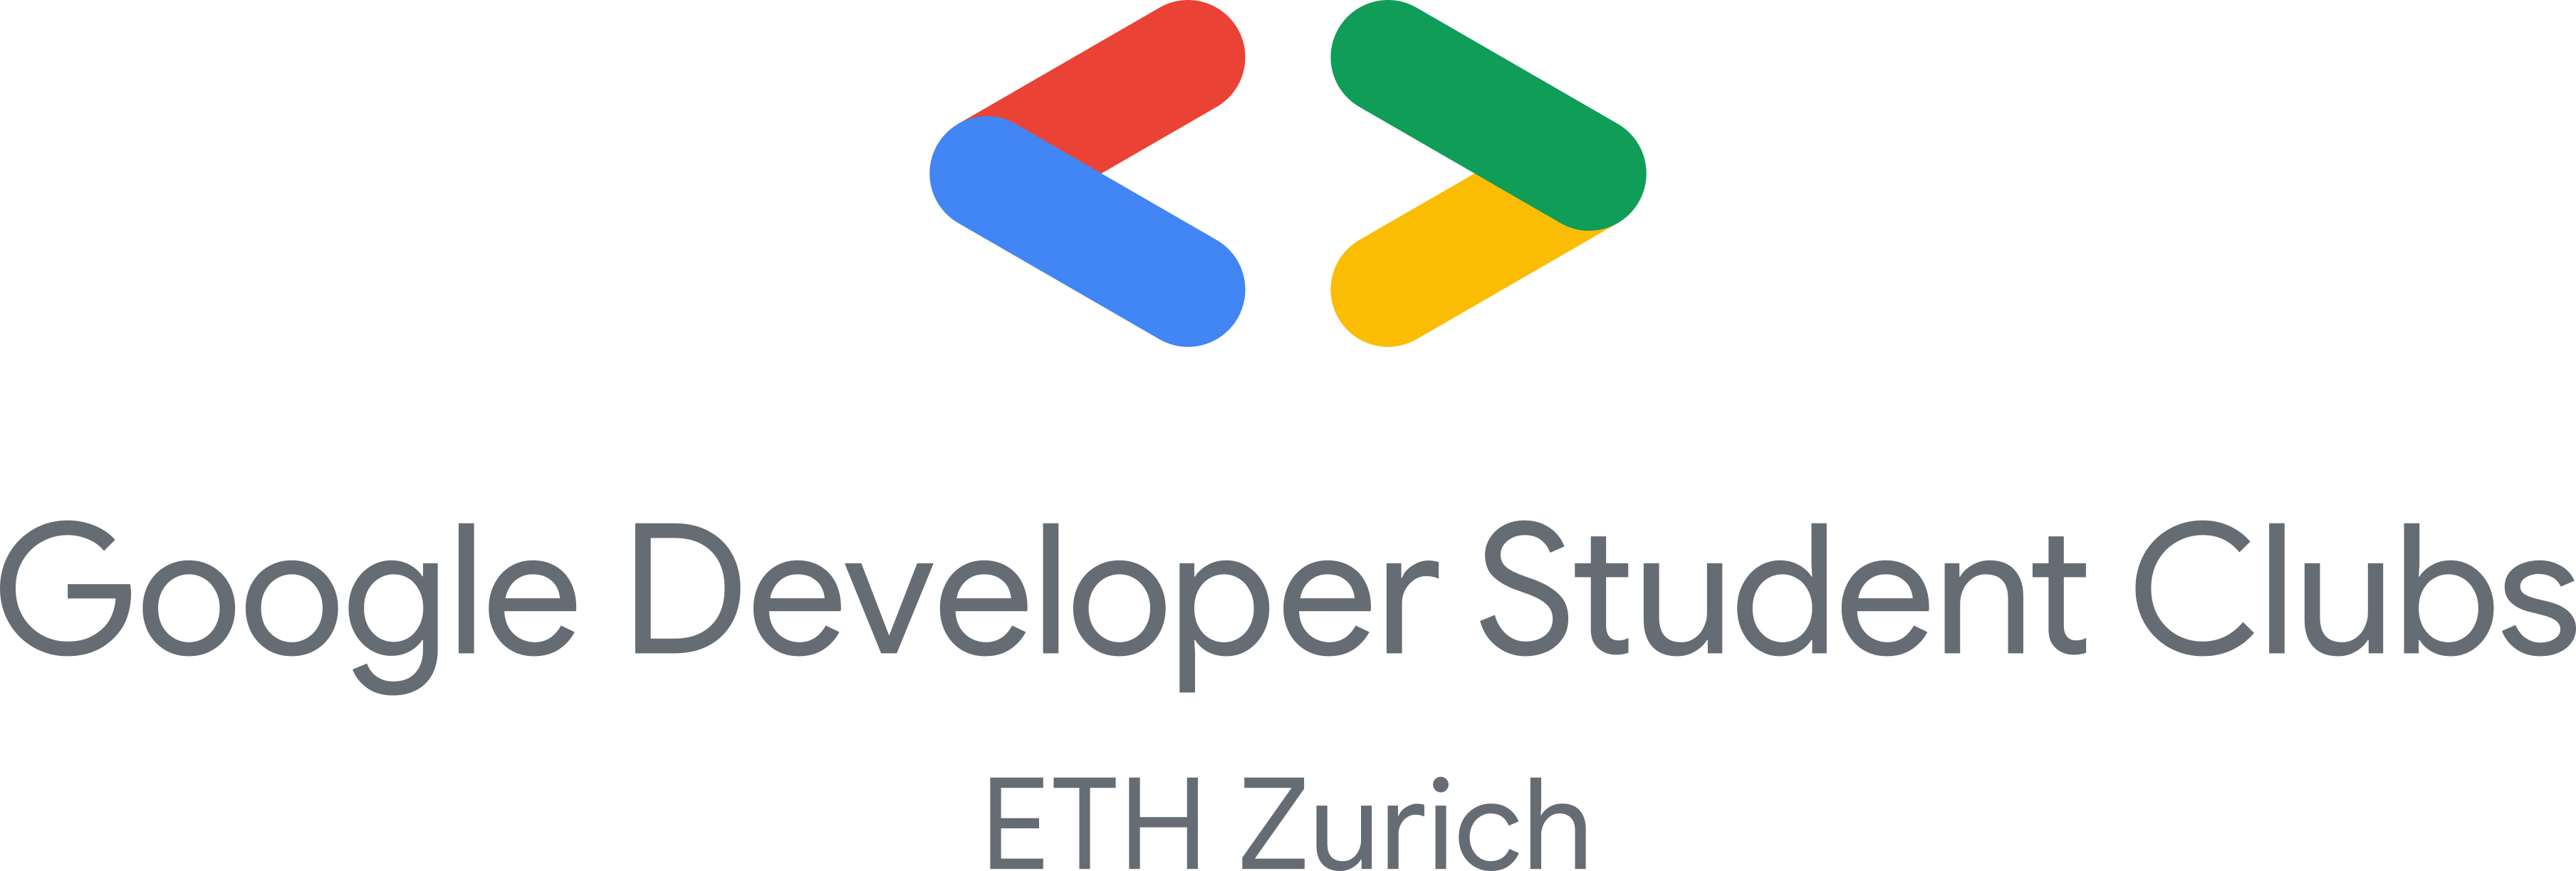 Logo of Google Developer Student Club Zurich